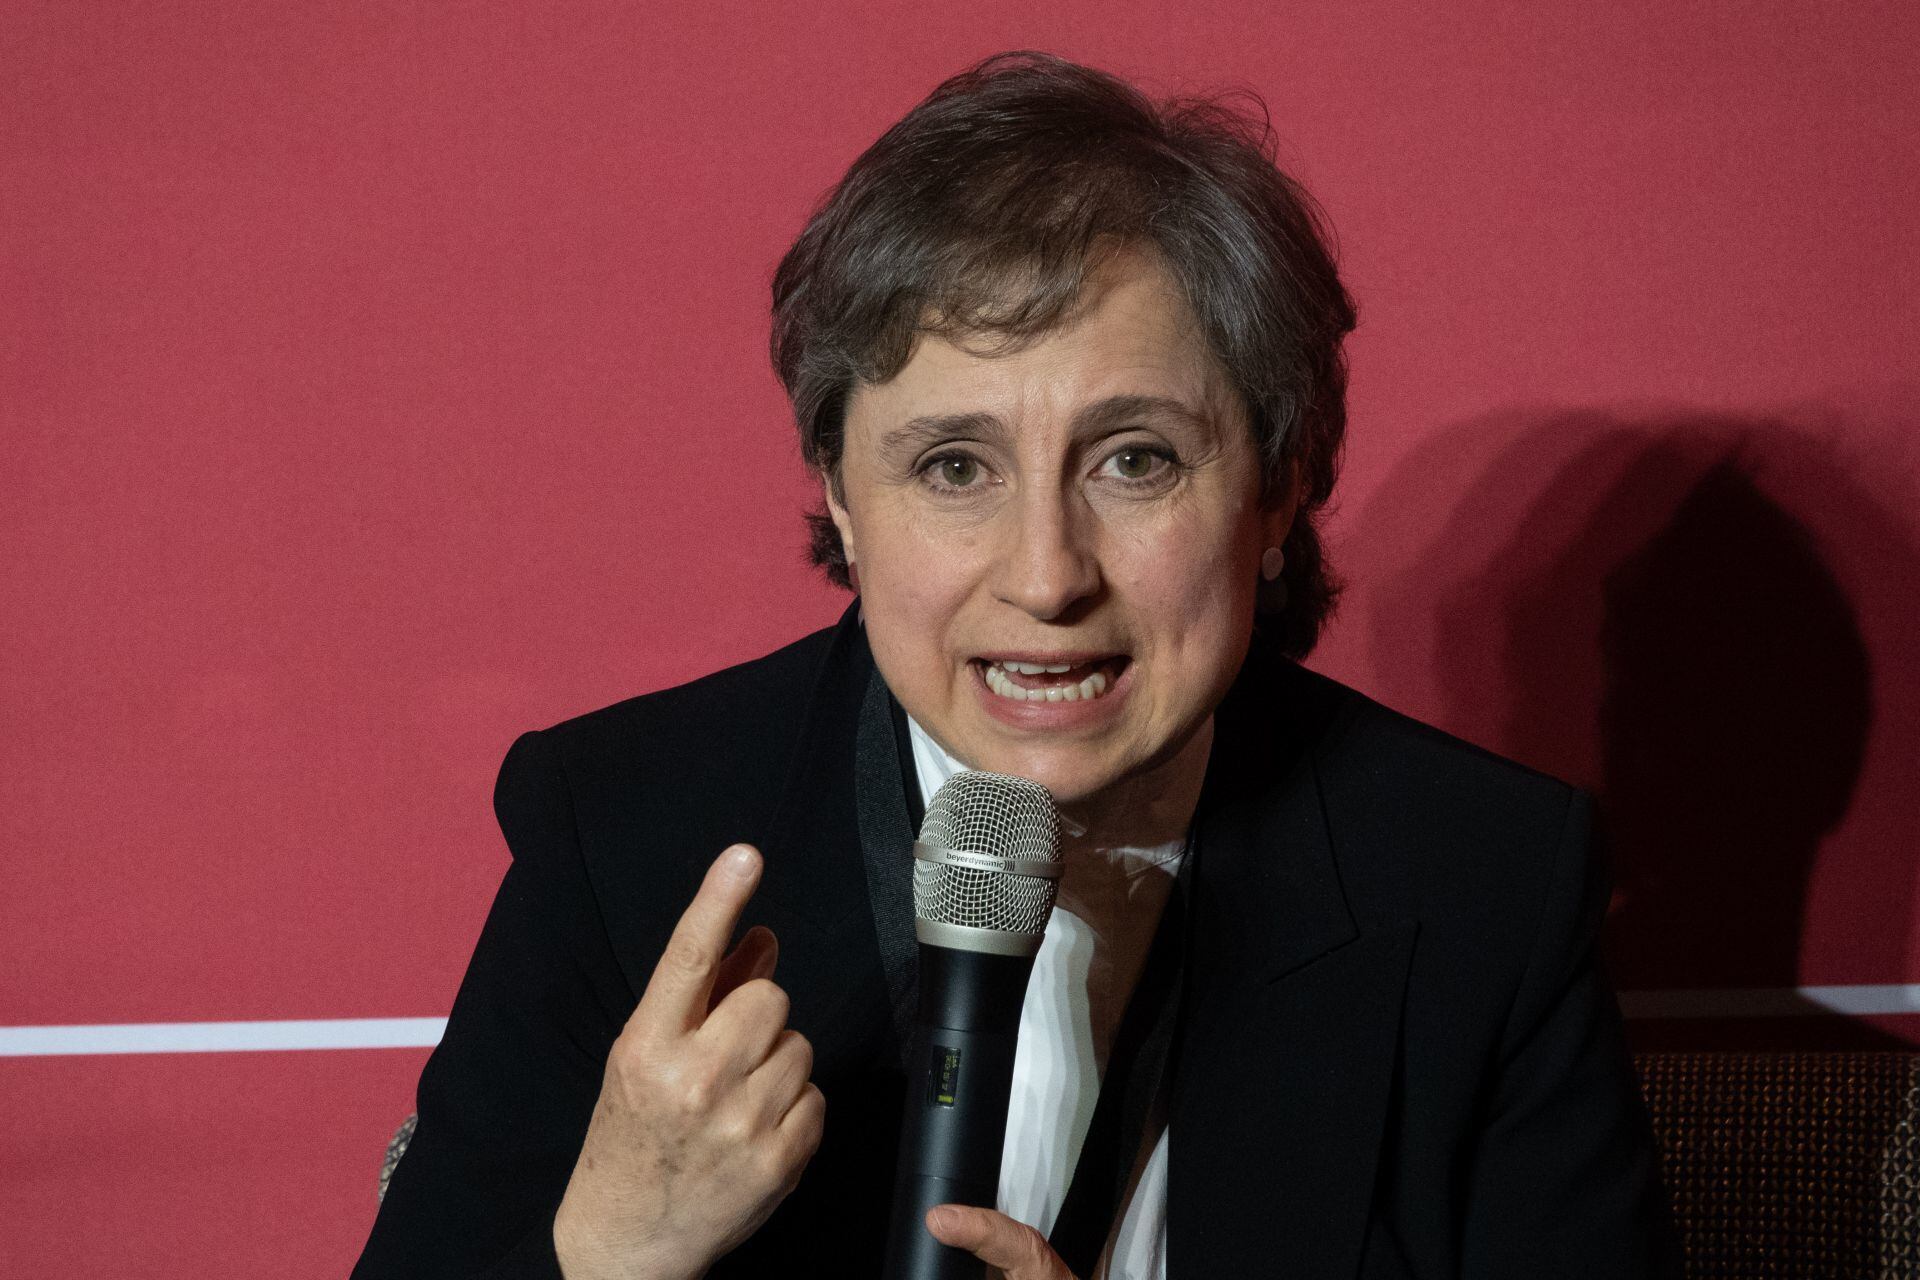 La periodista Carmen Aristegui  durante su participación en la conferencia "Momento Mexicano 2023, una visión compartida del País", organizada por Harvard Club de México